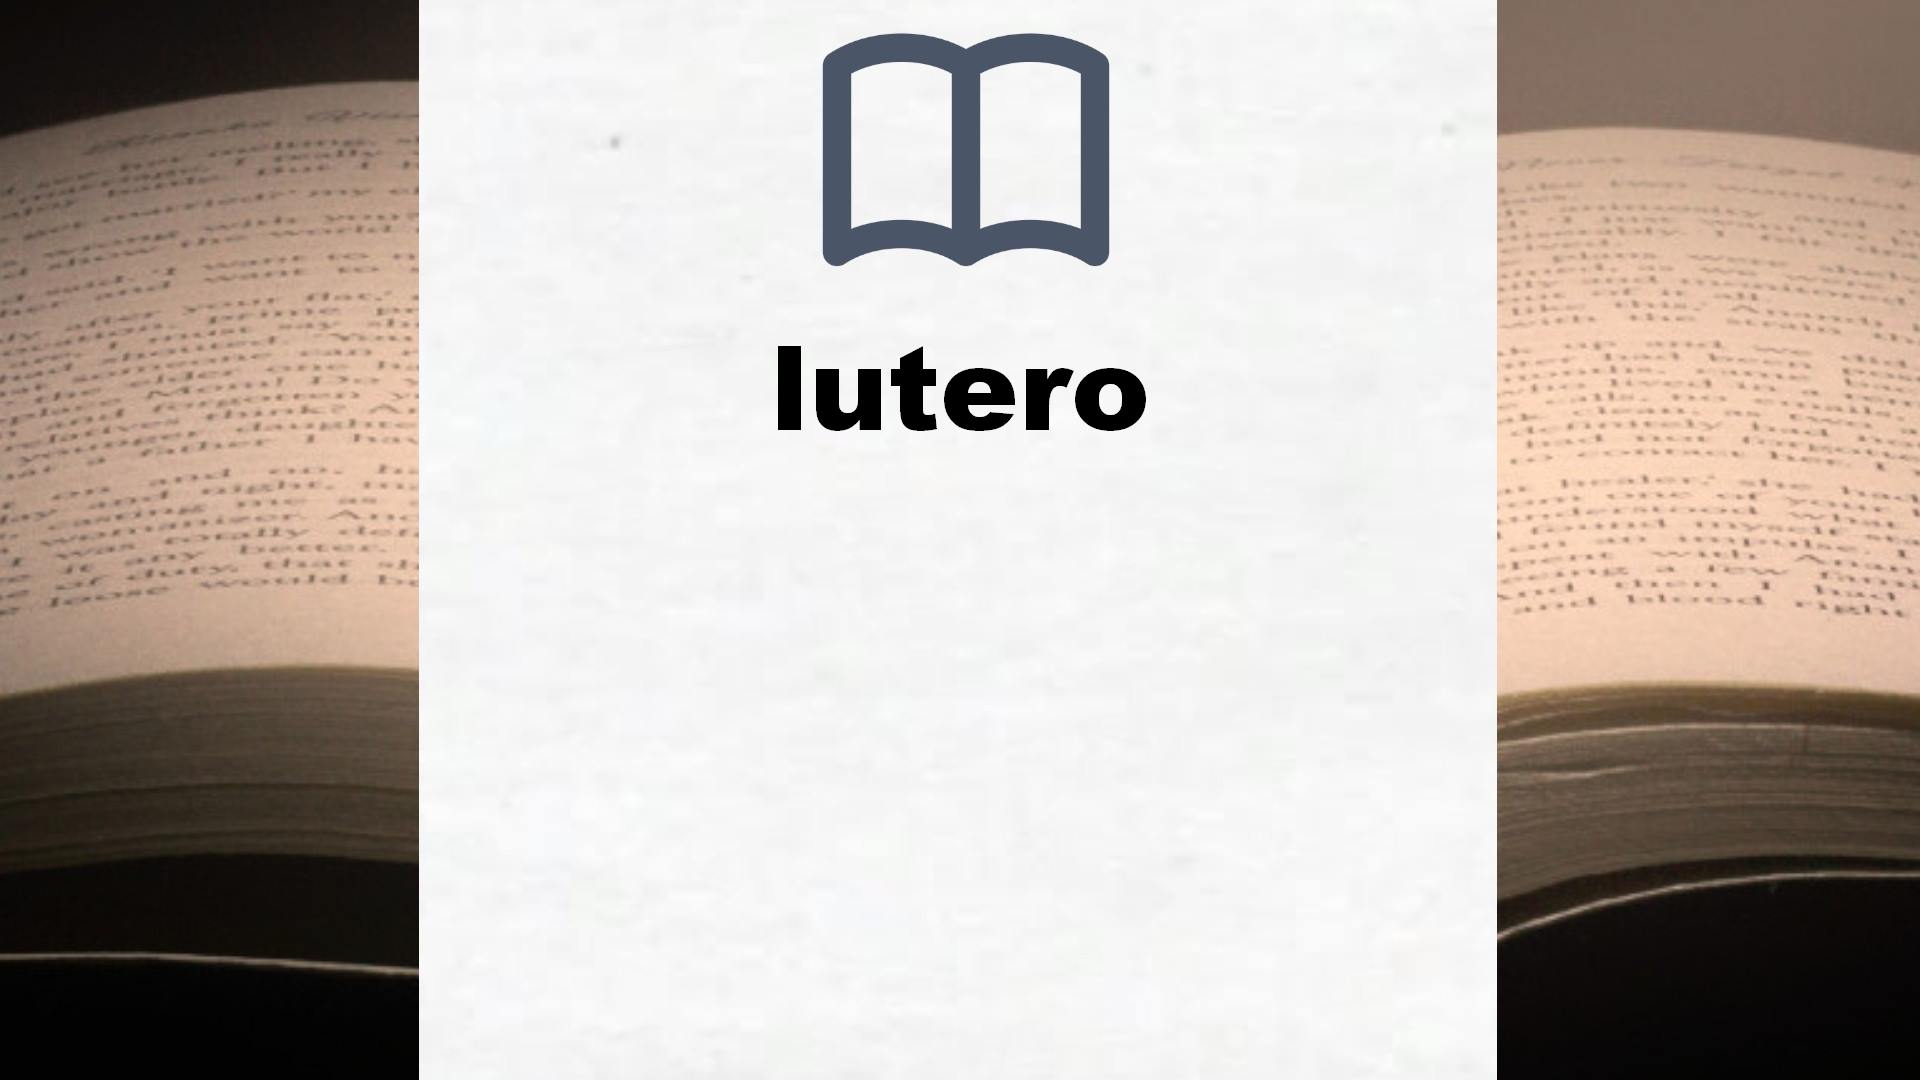 Libros sobre lutero